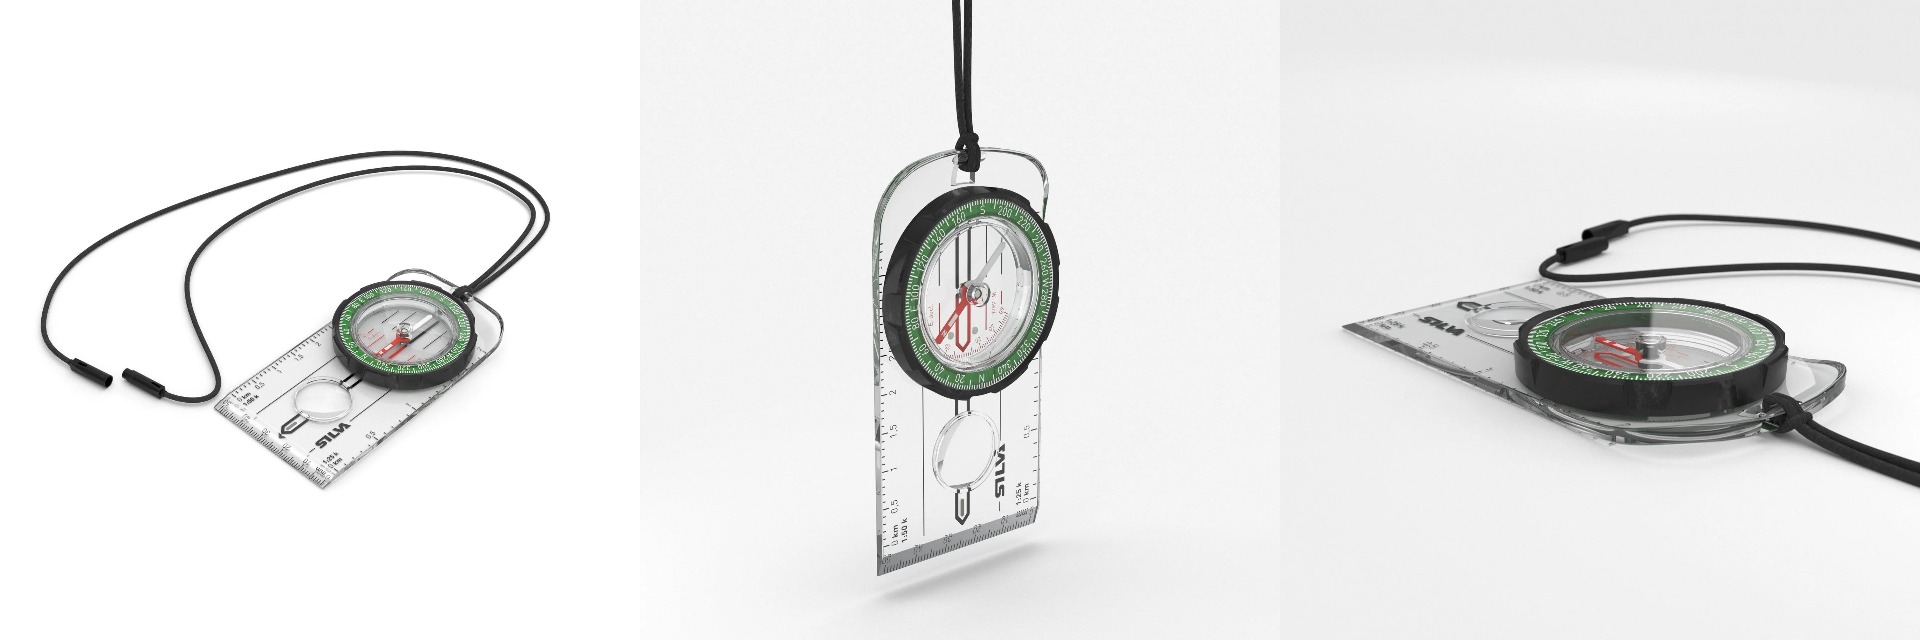 Silva Ranger kartni kompas je vrhunski pripomoček za orientacijo na terenu. S točno natančnostjo in vzdržljivostjo, vam bo kompas omogočil učinkovito navigacijo v naravi. Pridobite svoj kakovosten kompas danes!